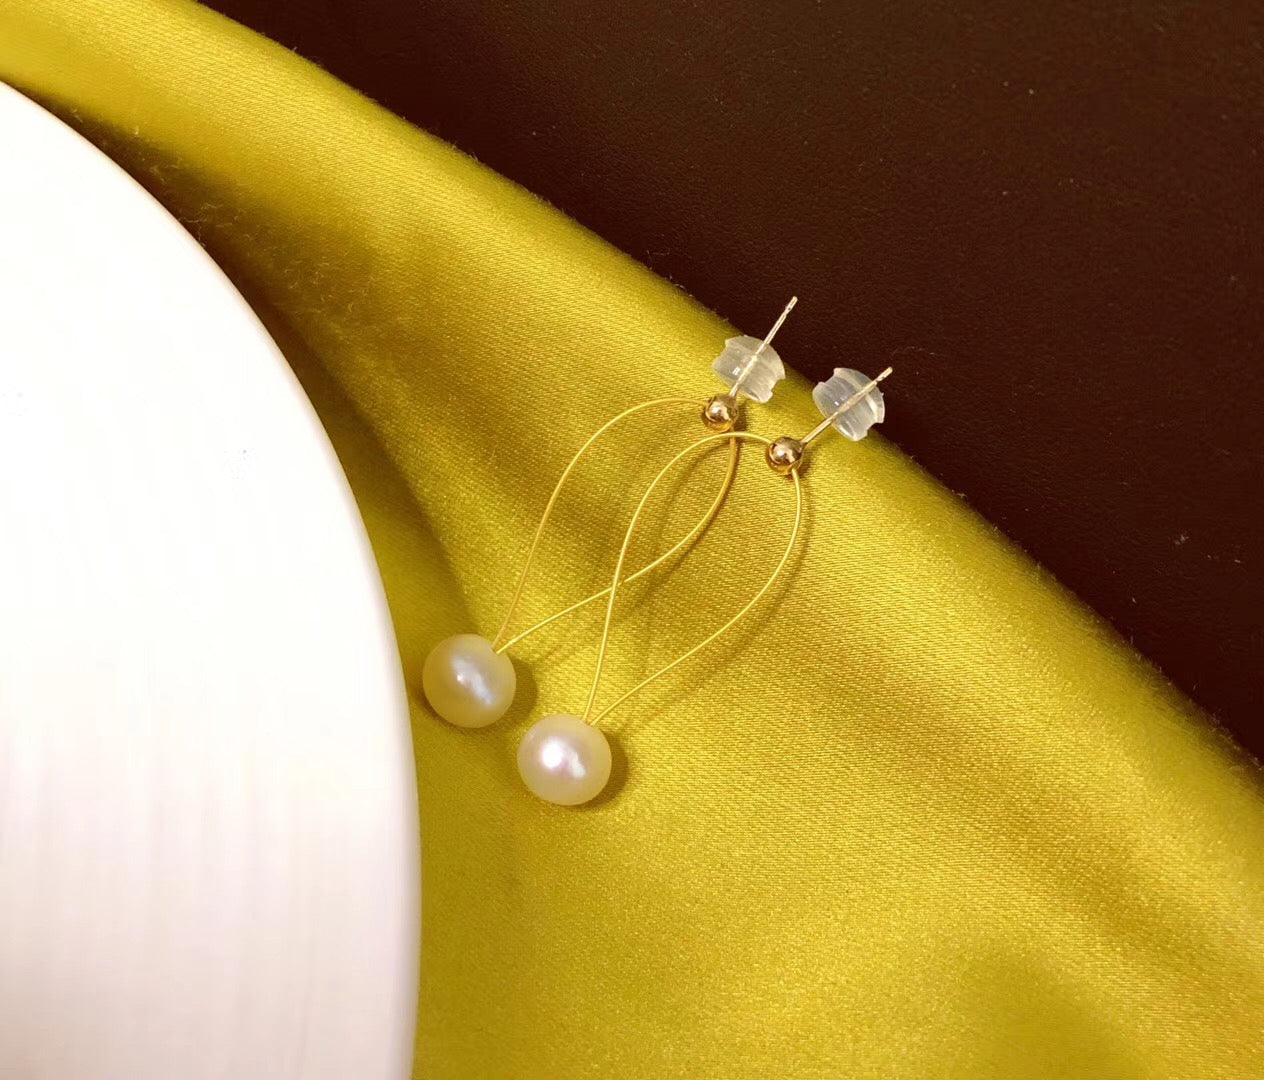 MMK 2-Pearl Necklace, 1-Pearl Drop Earrings